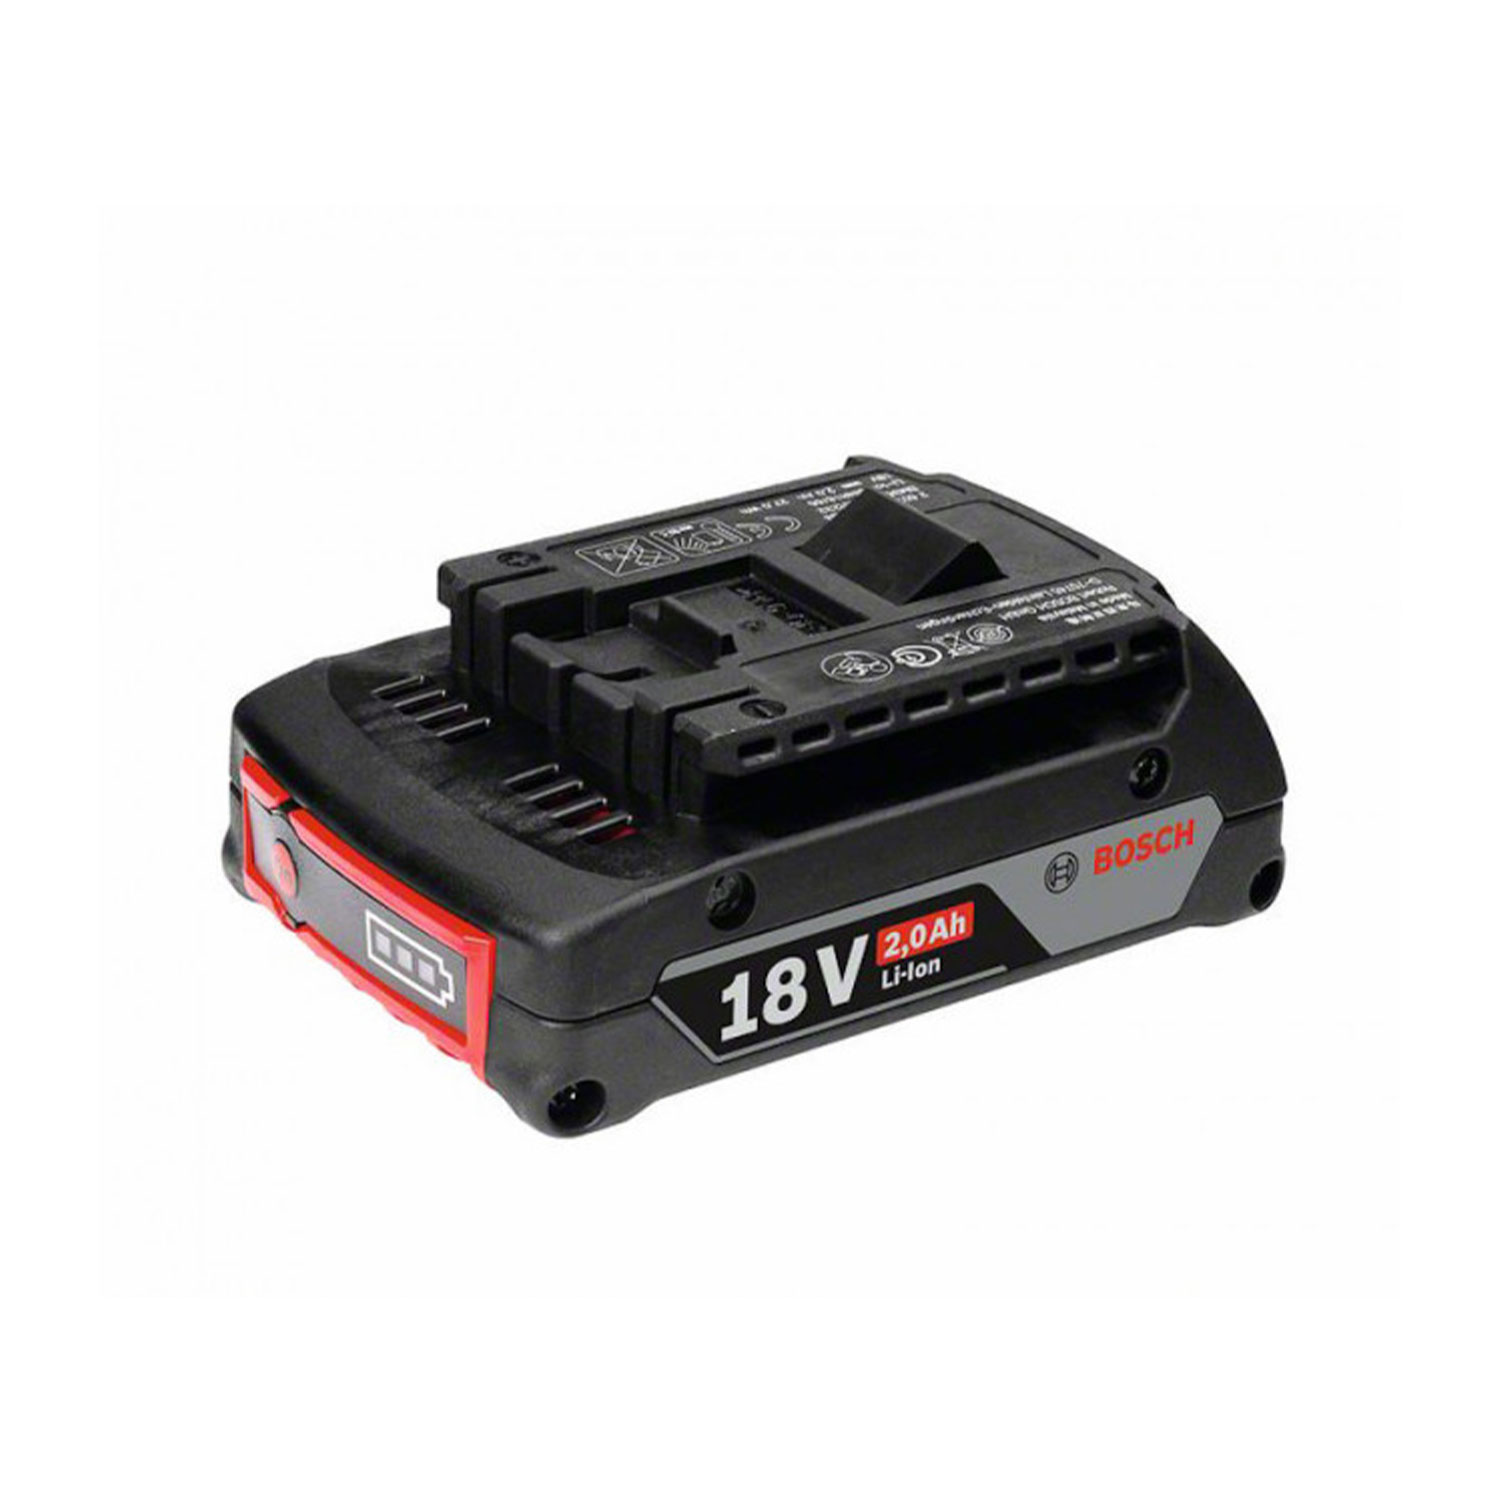 Bosch GBA 18 Volt 2.0 Ah M-B Battery